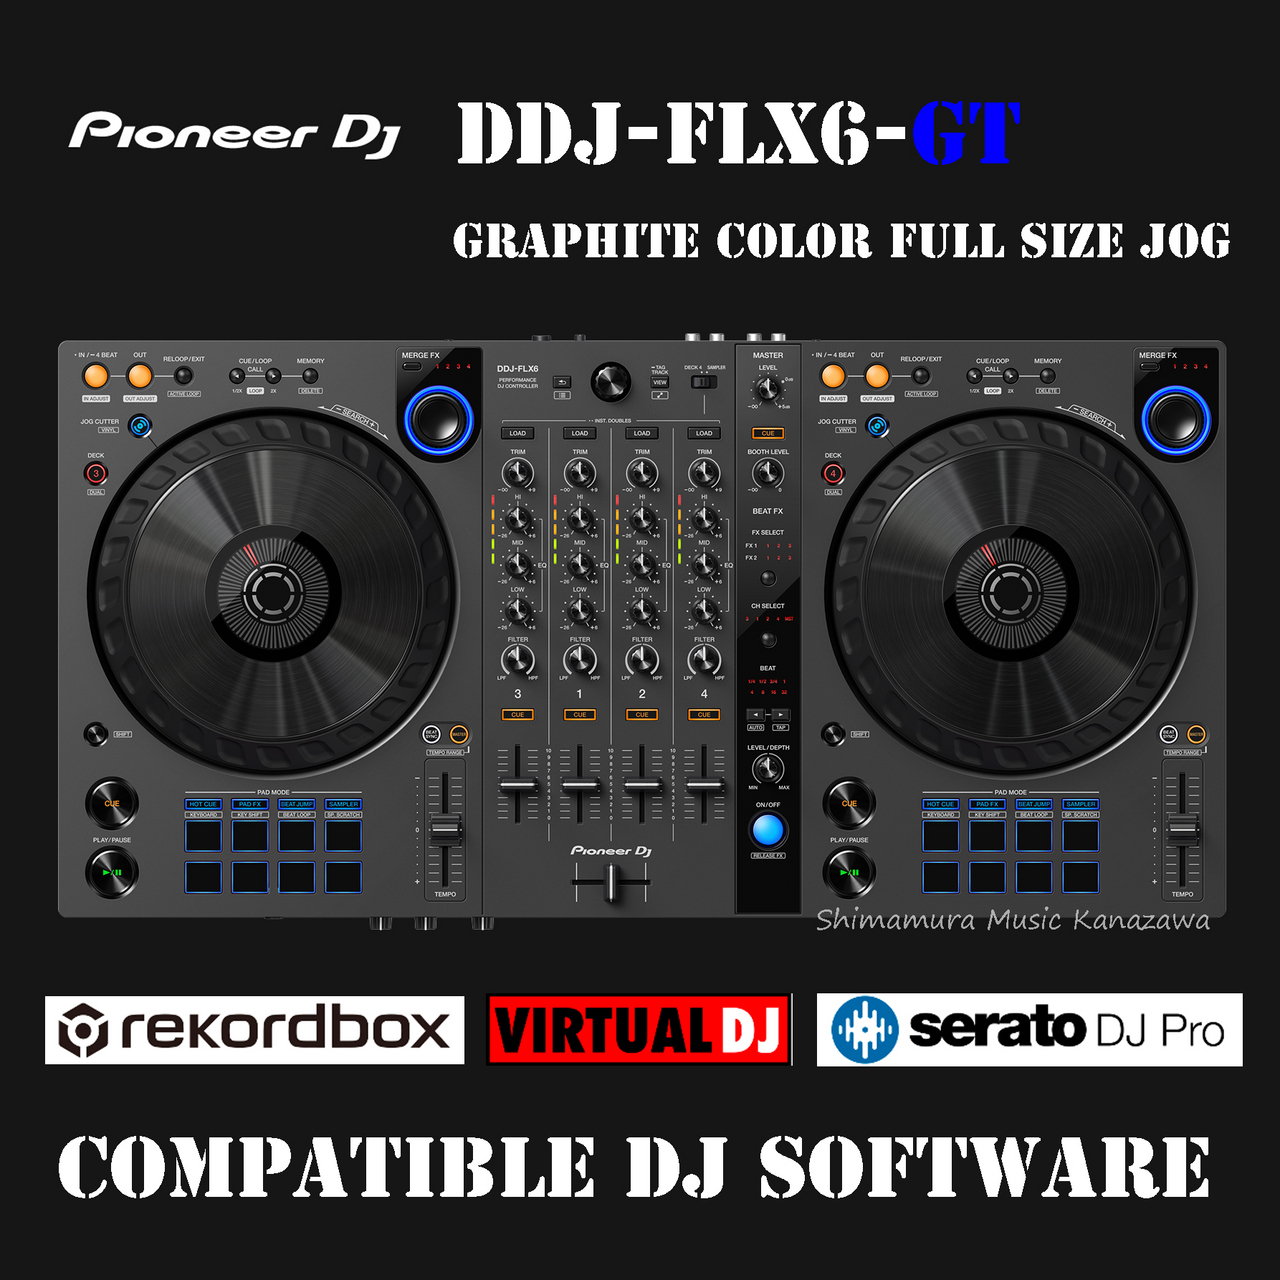 Pioneer Dj DDJ-FLX6-GT rekordbox・Serato DJ Pro・VirtualDJ 対応